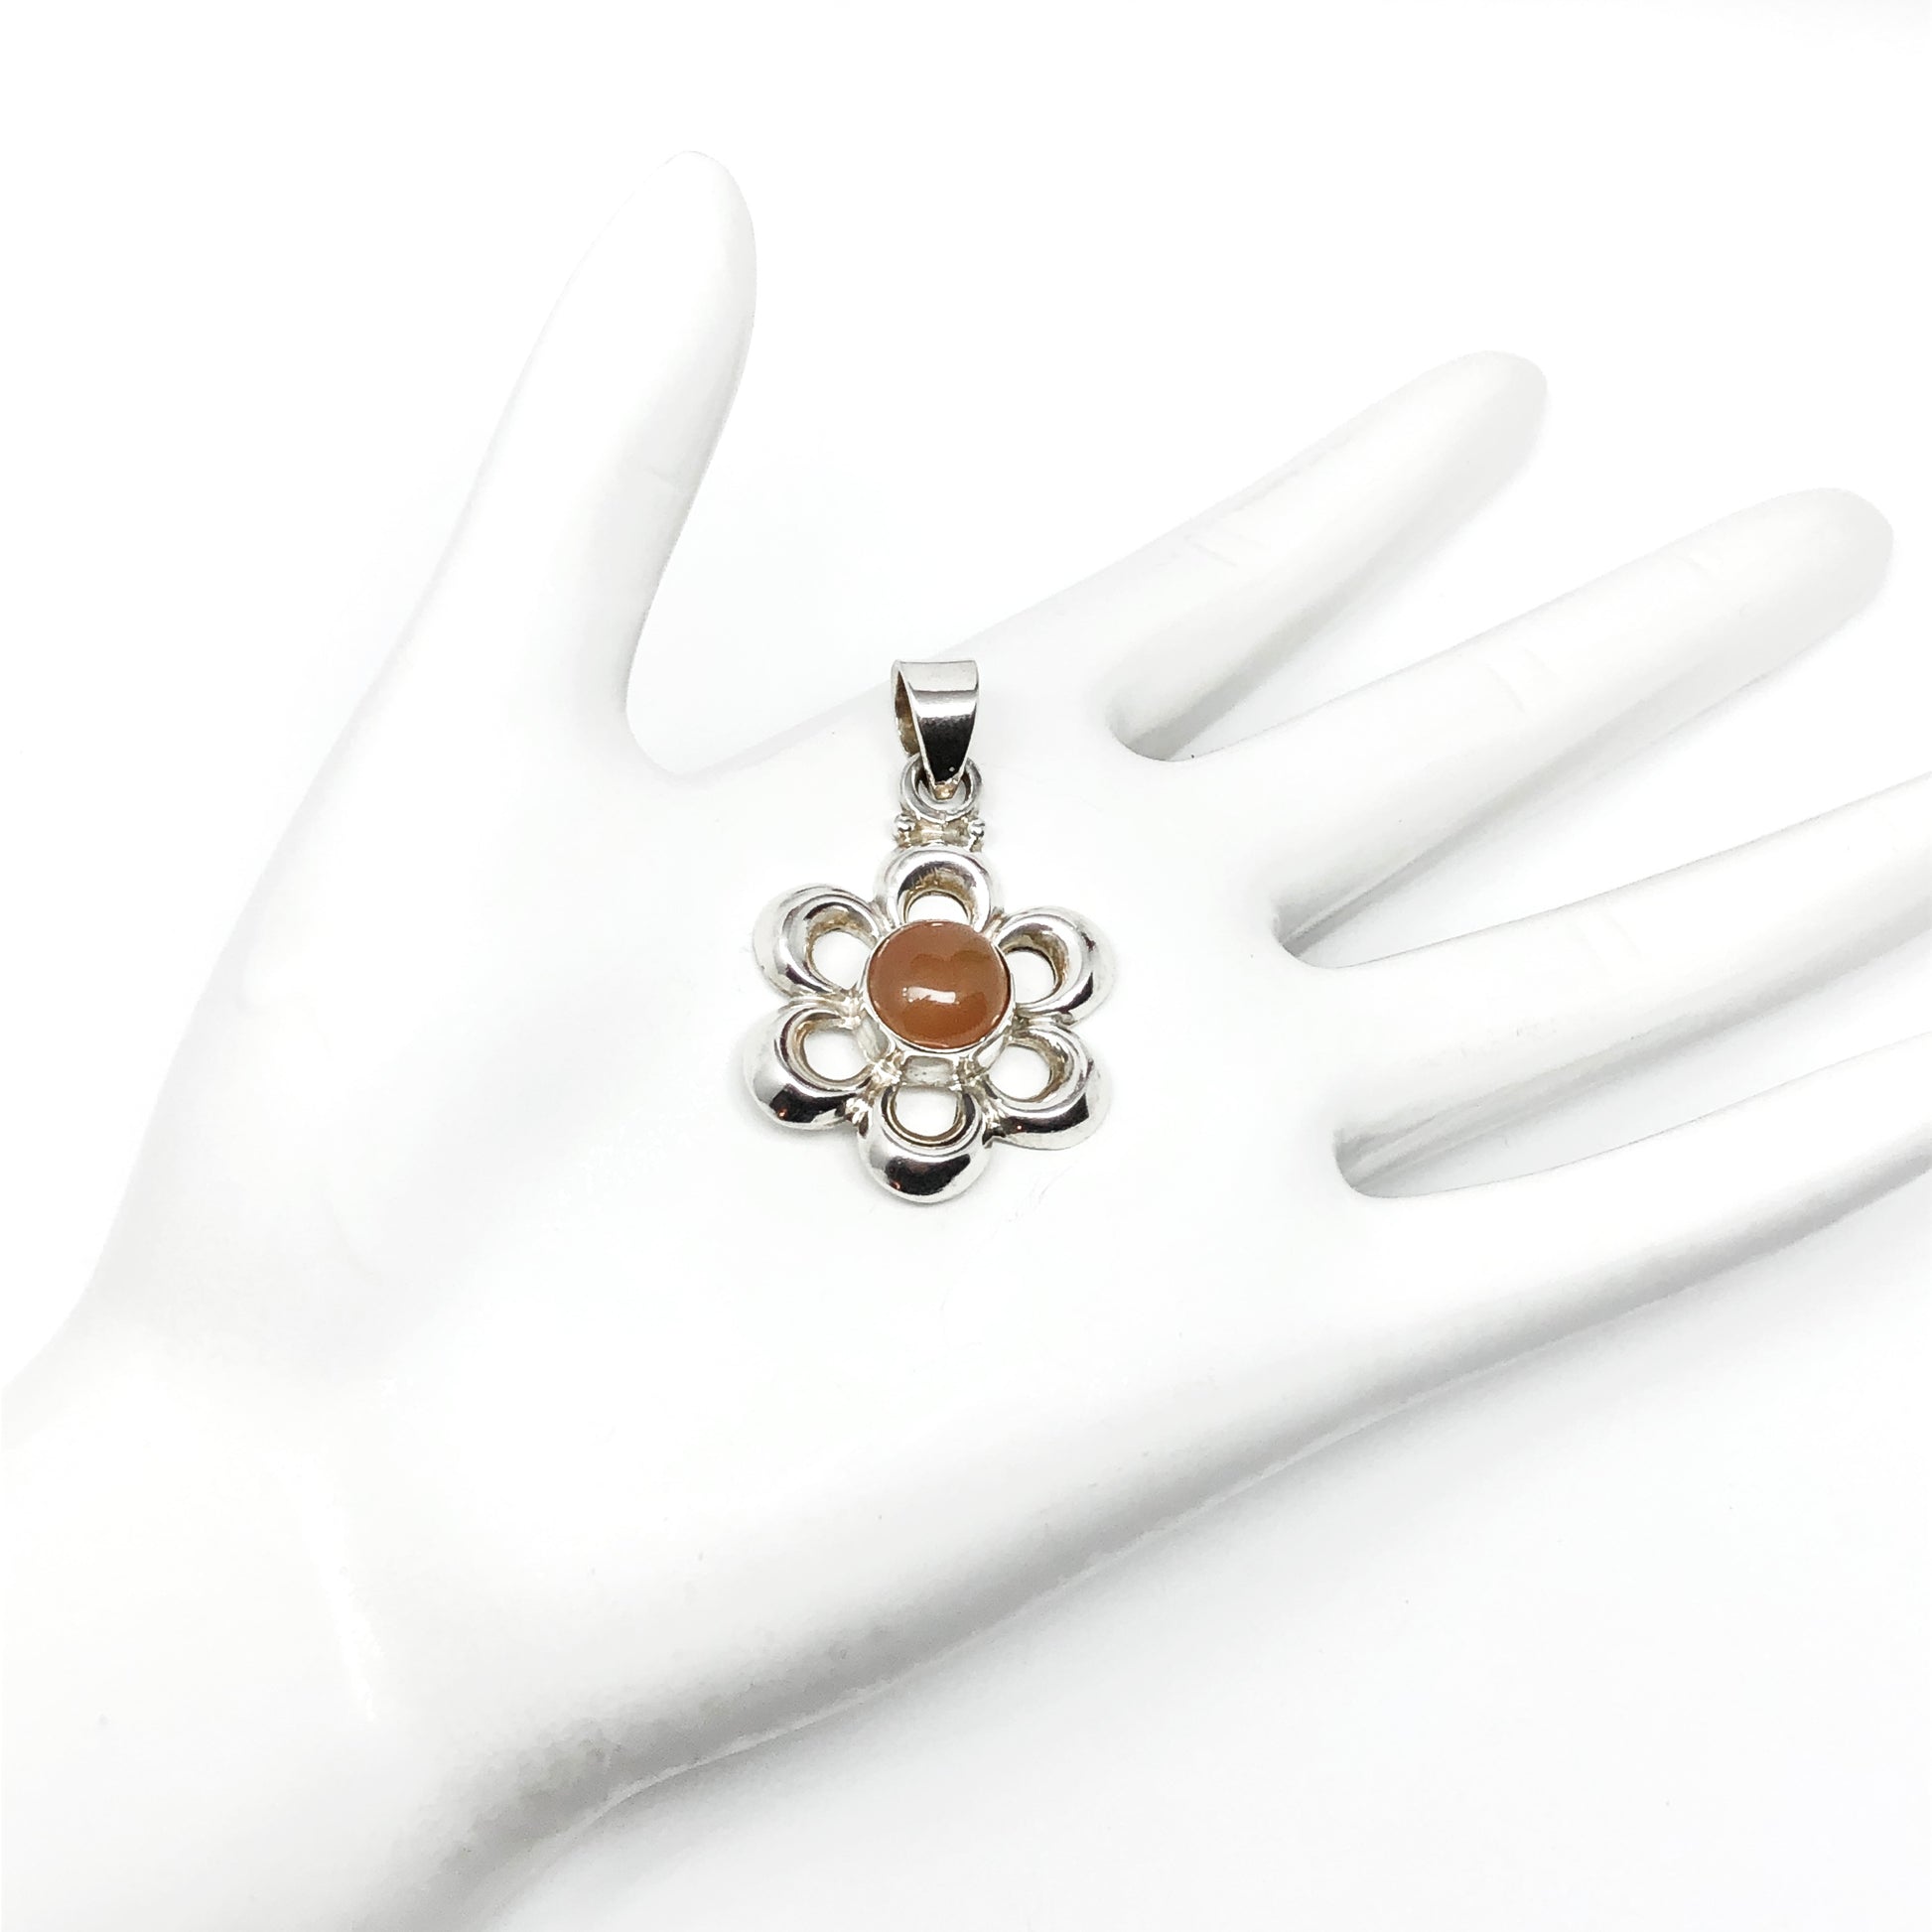 Fall Fashion - Sterling Silver Carnelian Stone Flower Pendant | Blingschlingers Jewelry online